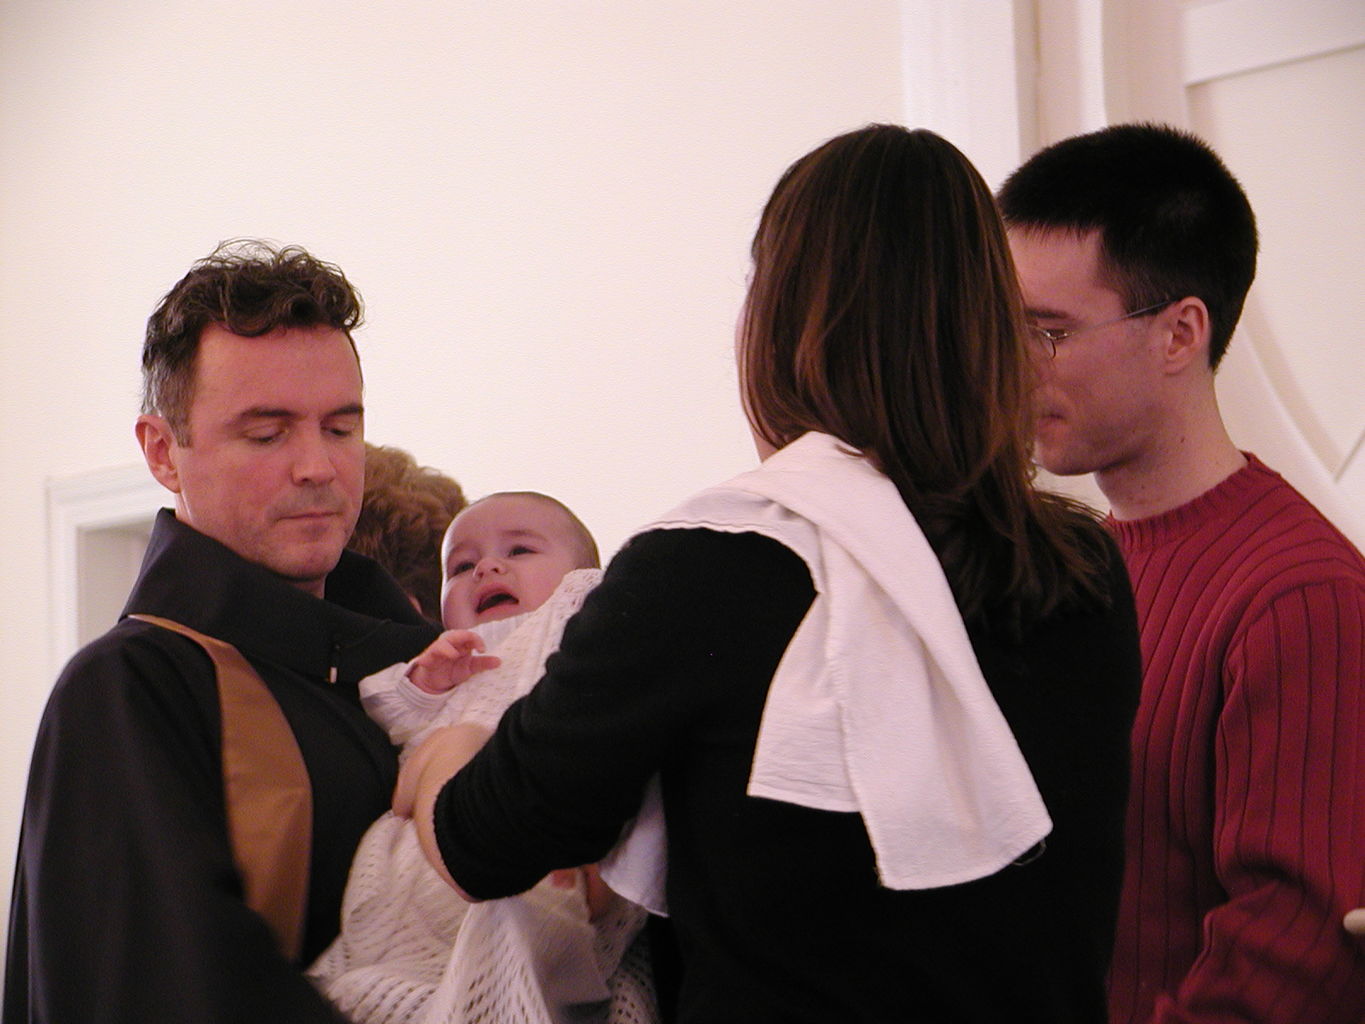 James' Baptism
